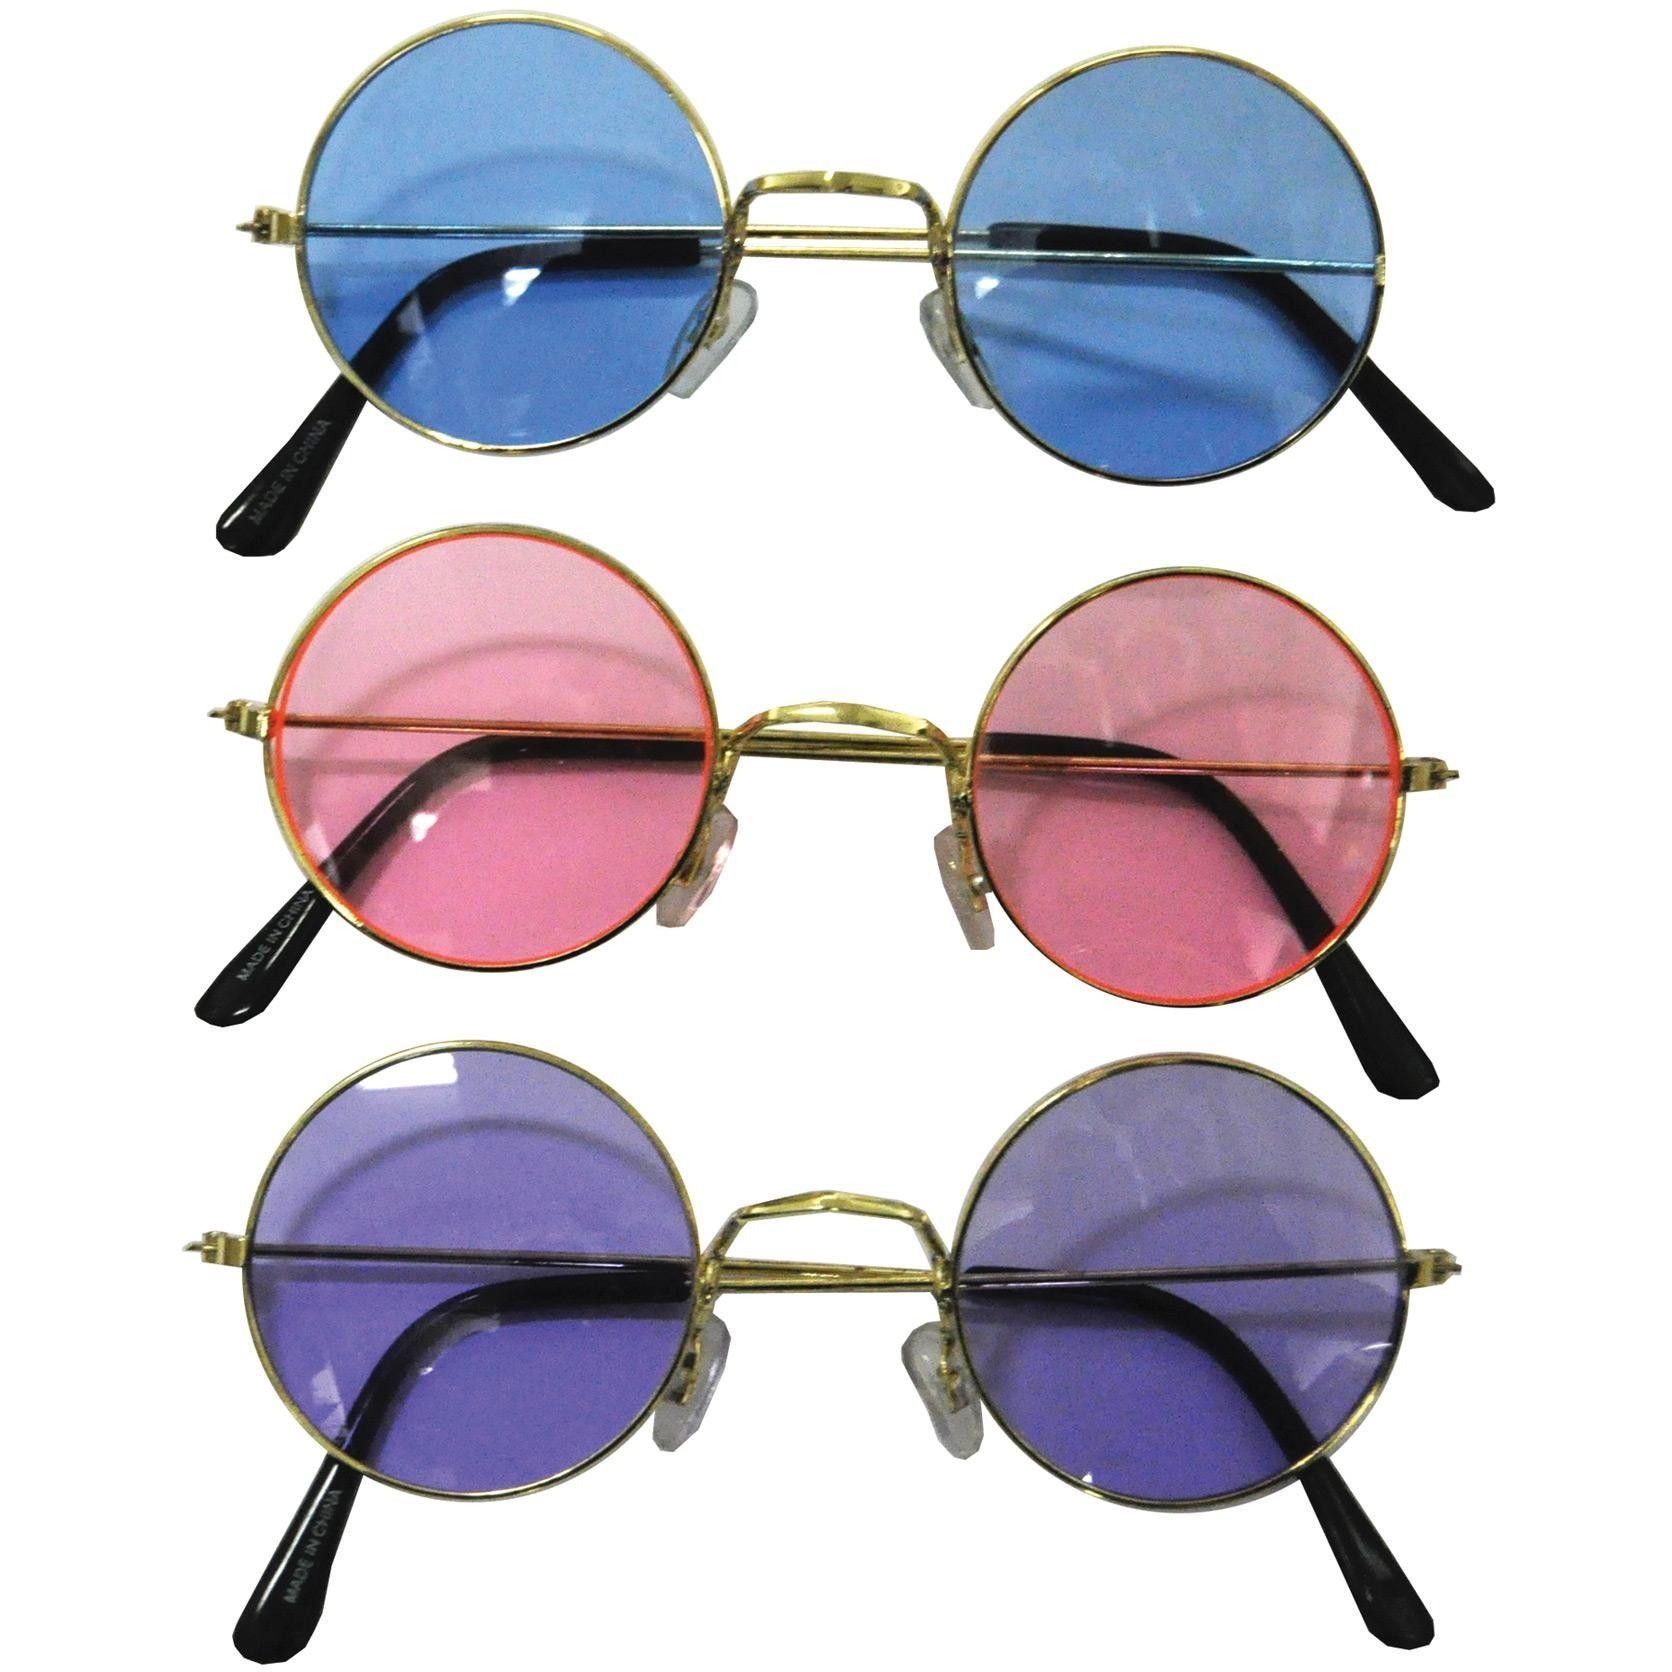 Купить очки женские на озон. Очки солнцезащитные John Lennon. Солнцезащитные очки Джона Леннона. Джон Леннон солнечные очки. Джон Леннон цветные очки.